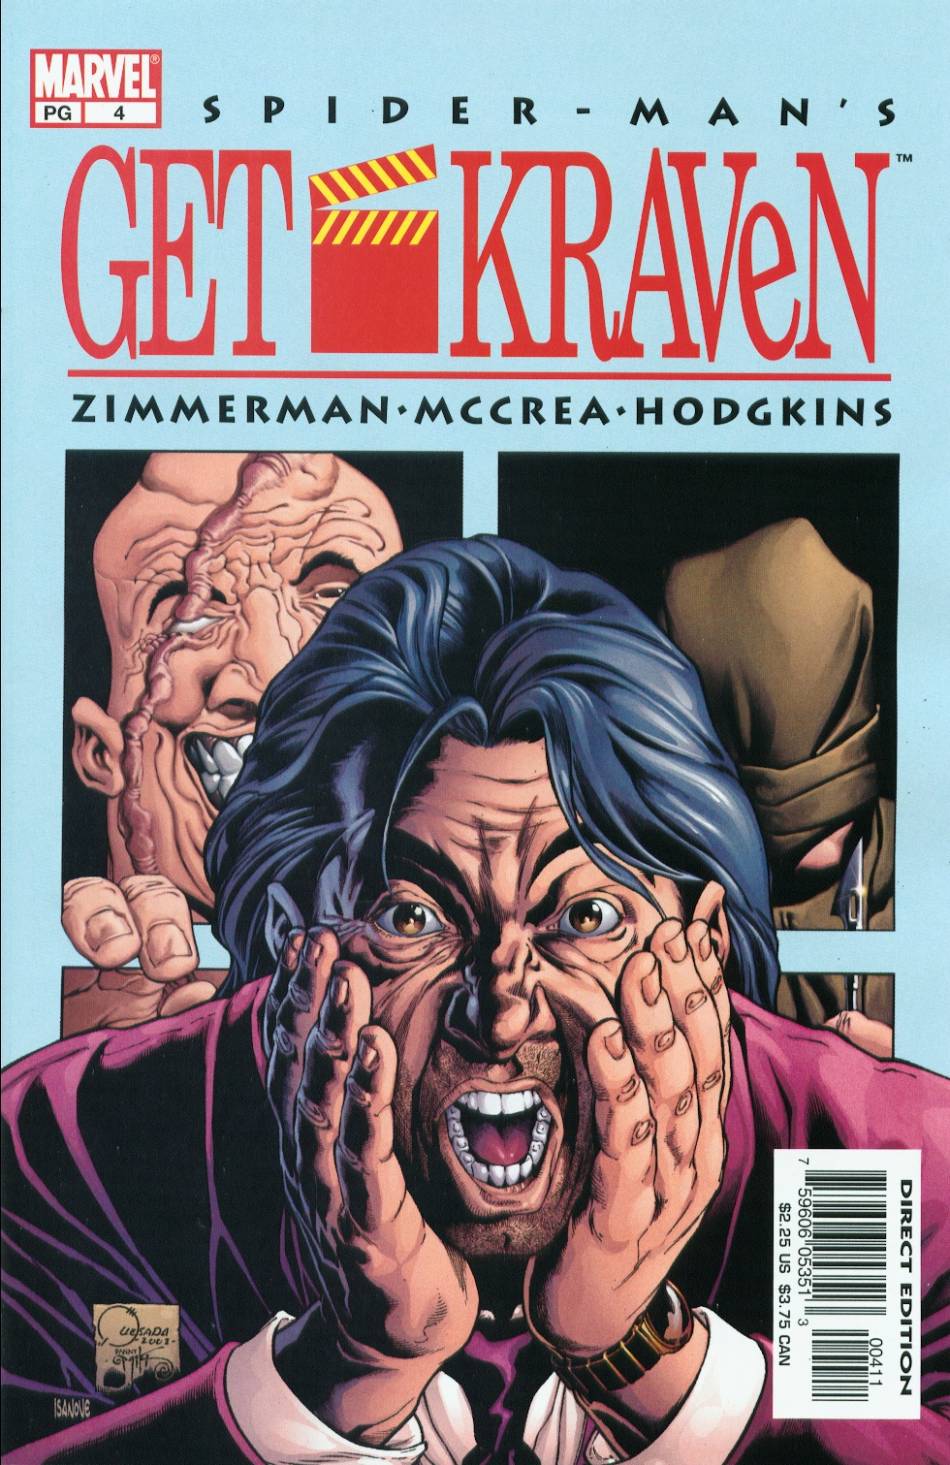 Read online Spider-Man: Get Kraven comic -  Issue #4 - 1